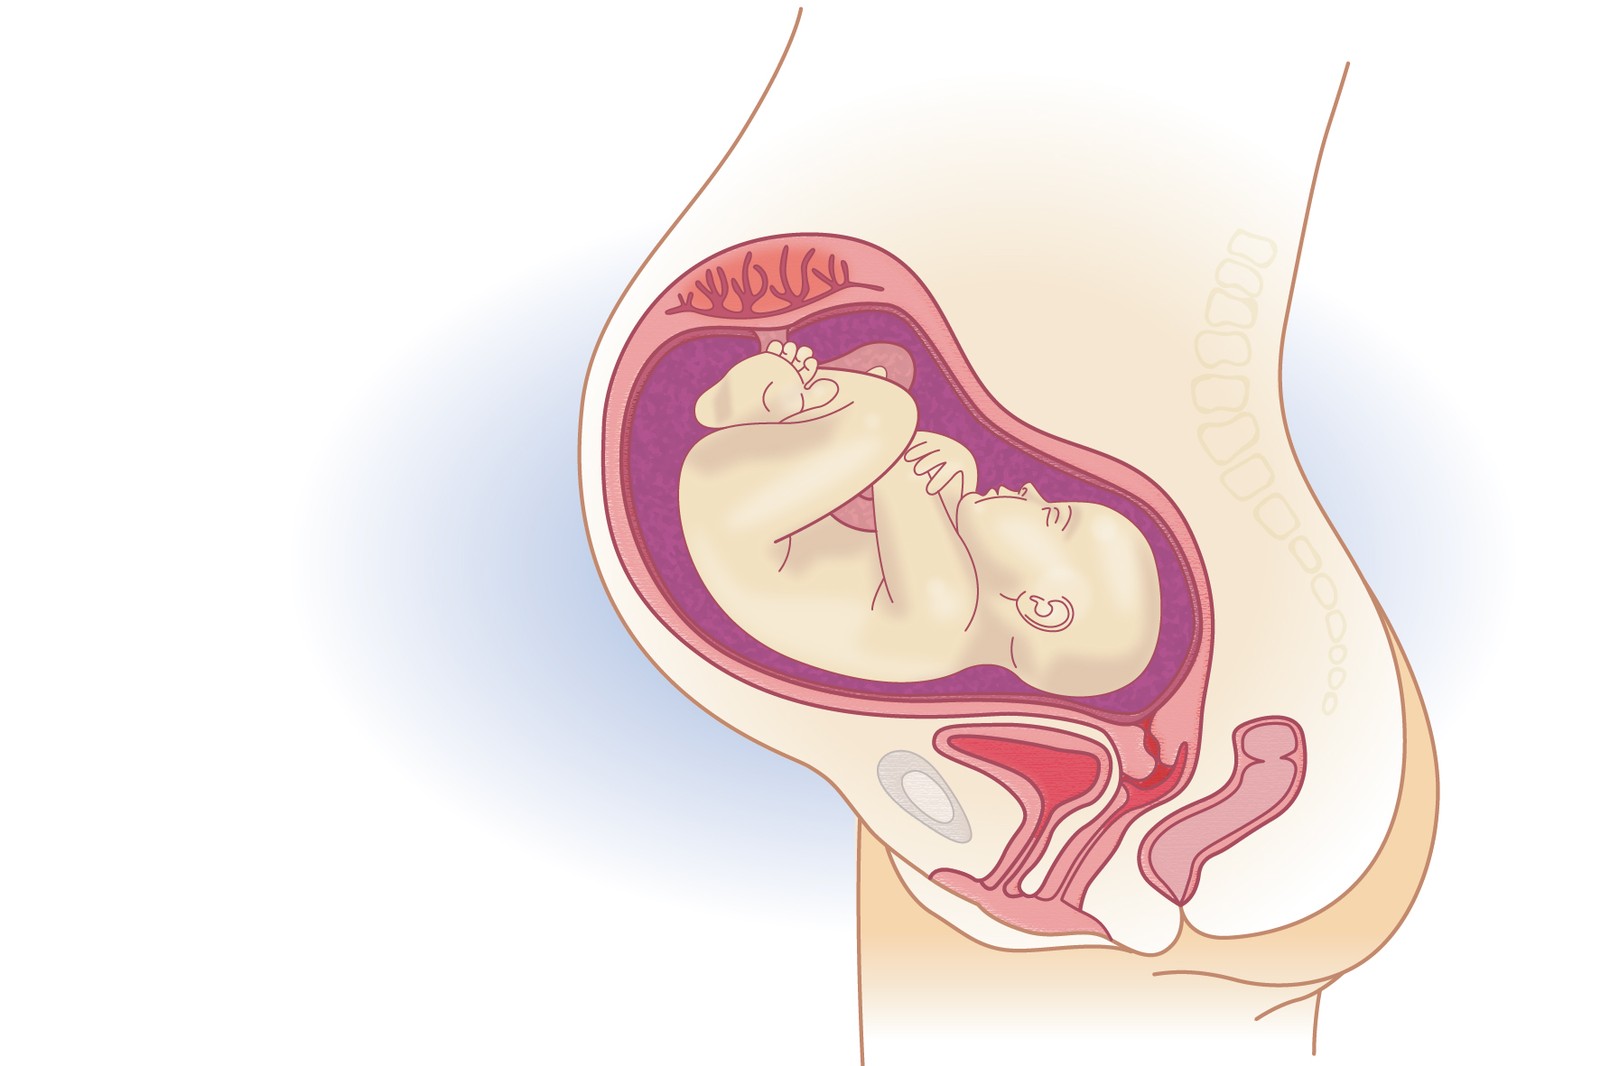 Plod v 32. týdnu těhotenství